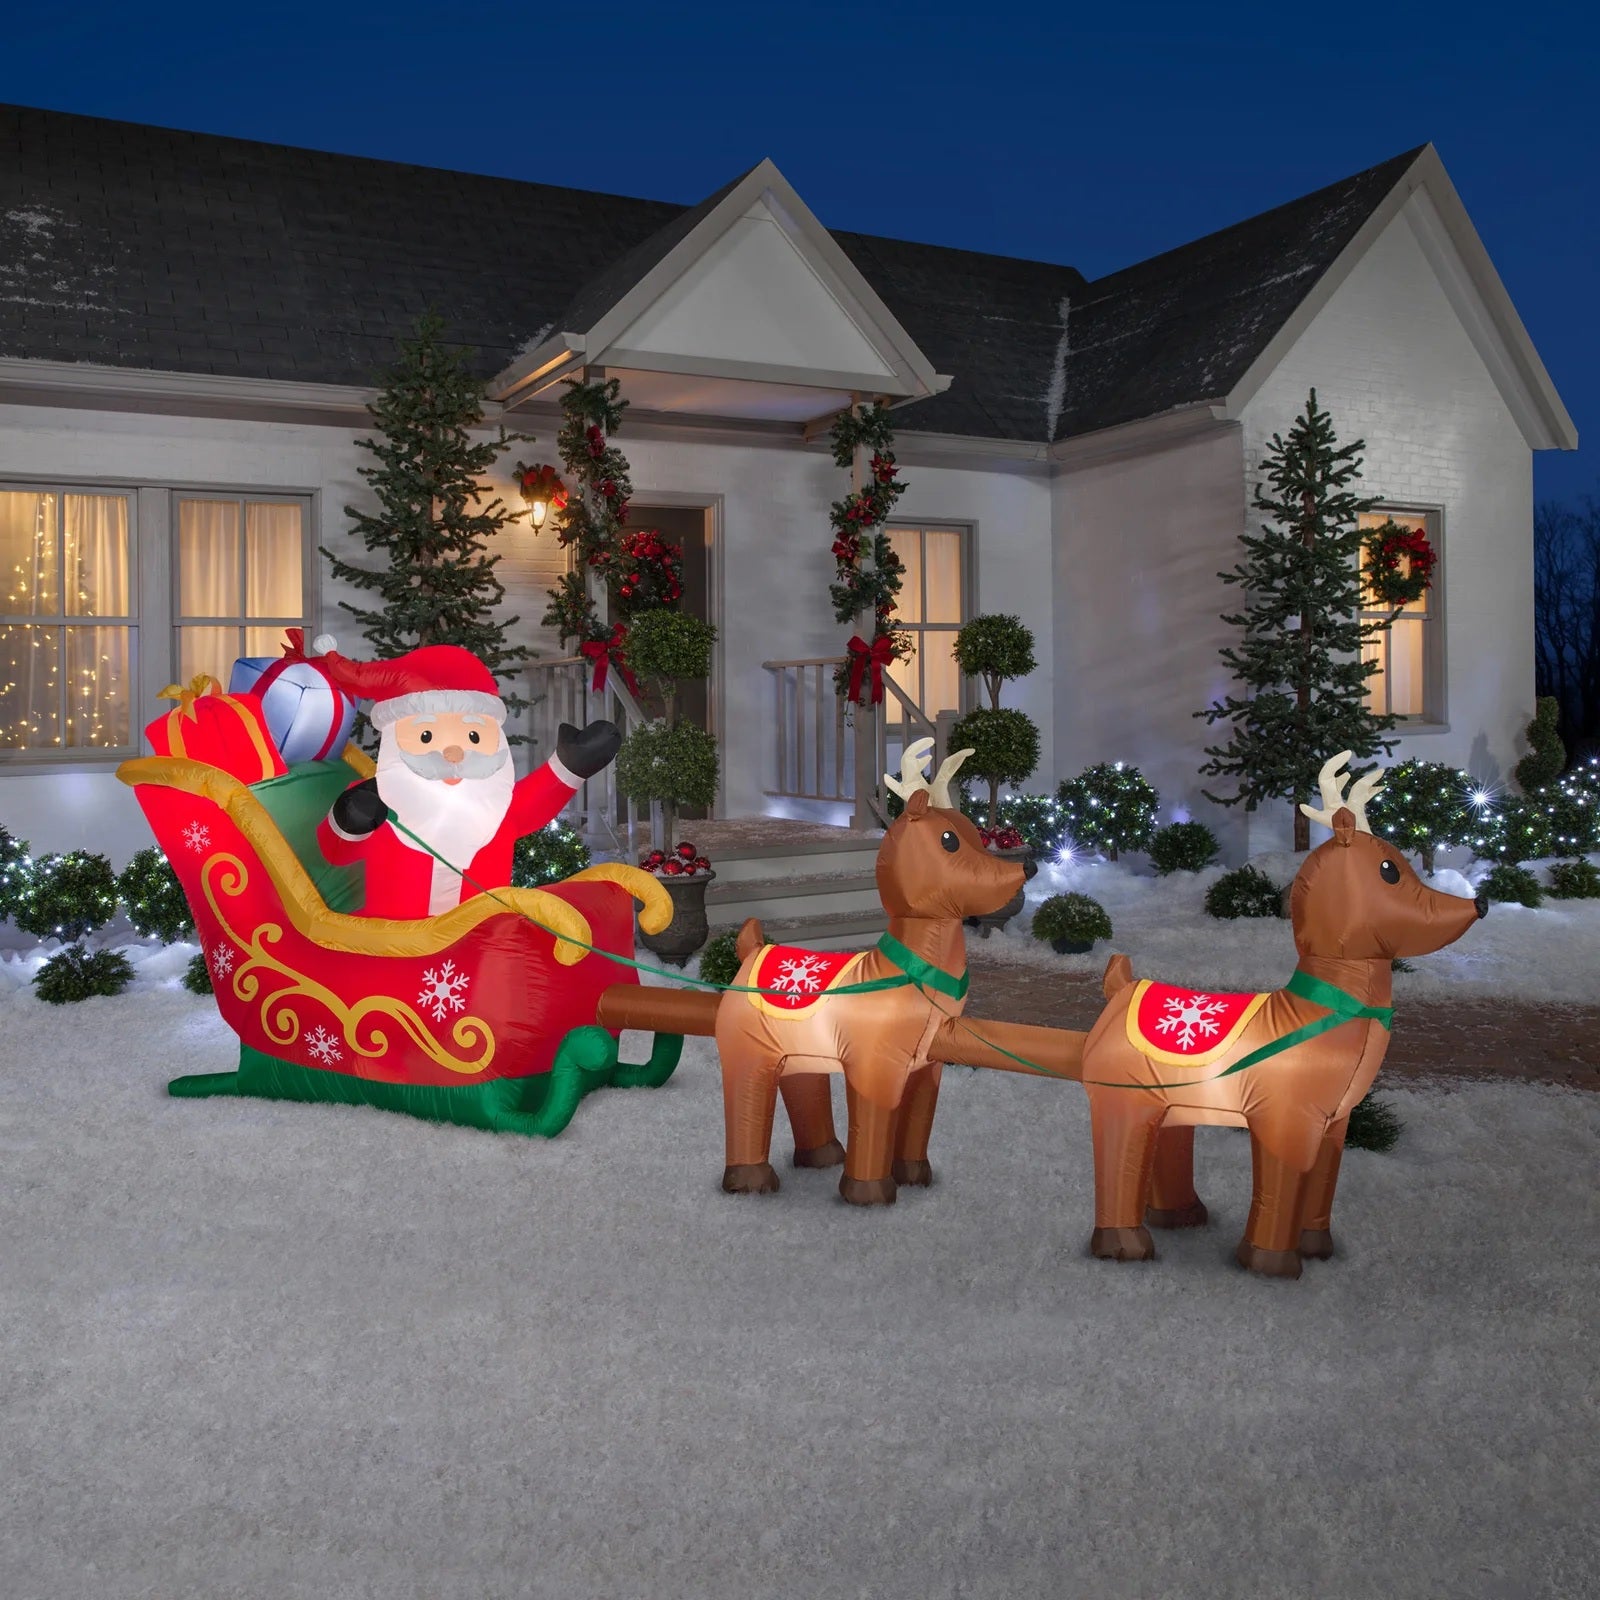 Gemmy® Inflatable Santa & Sleigh Reindeer Outdoor Scene Decoration